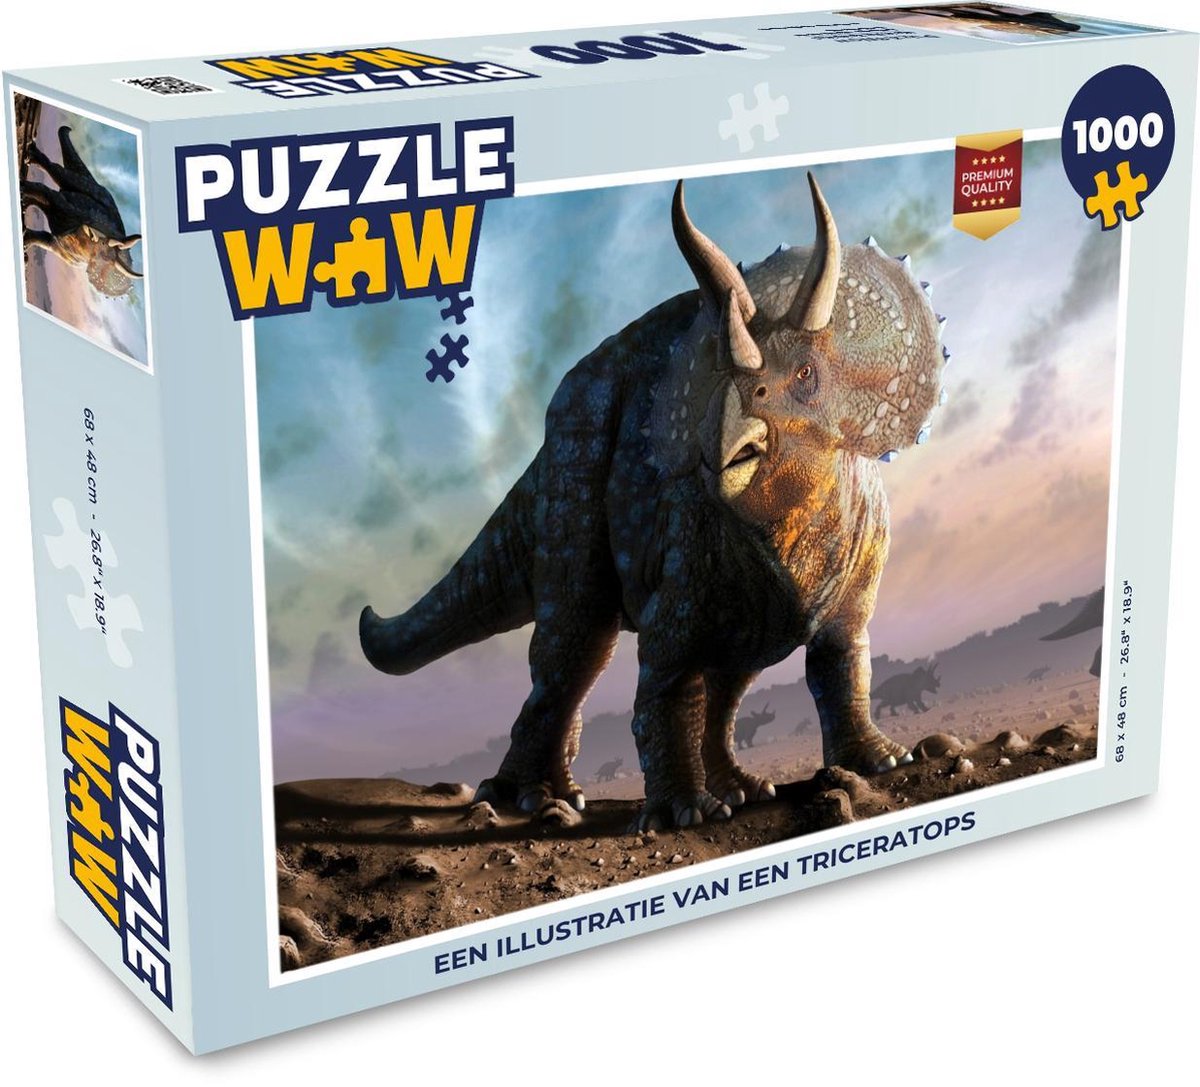 Afbeelding van product Puzzel 1000 stukjes volwassenen Dinosaurus illustratie 1000 stukjes - Een illustratie van een triceratops - PuzzleWow heeft +100000 puzzels